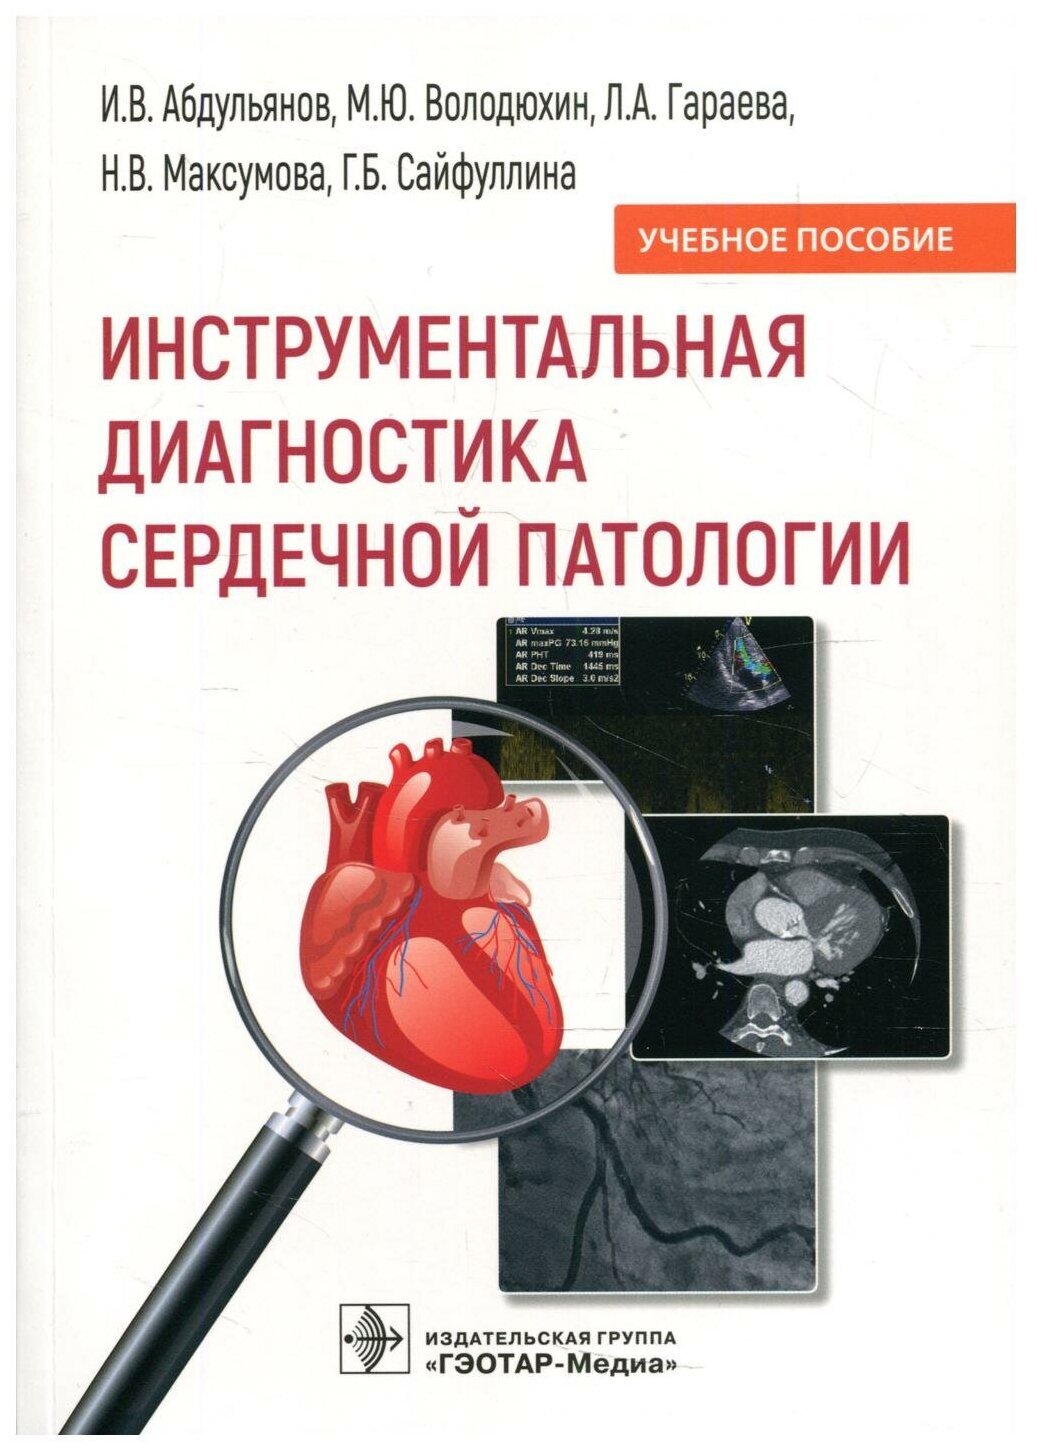 Инструментальная диагностика сердечной патологии - фото №1